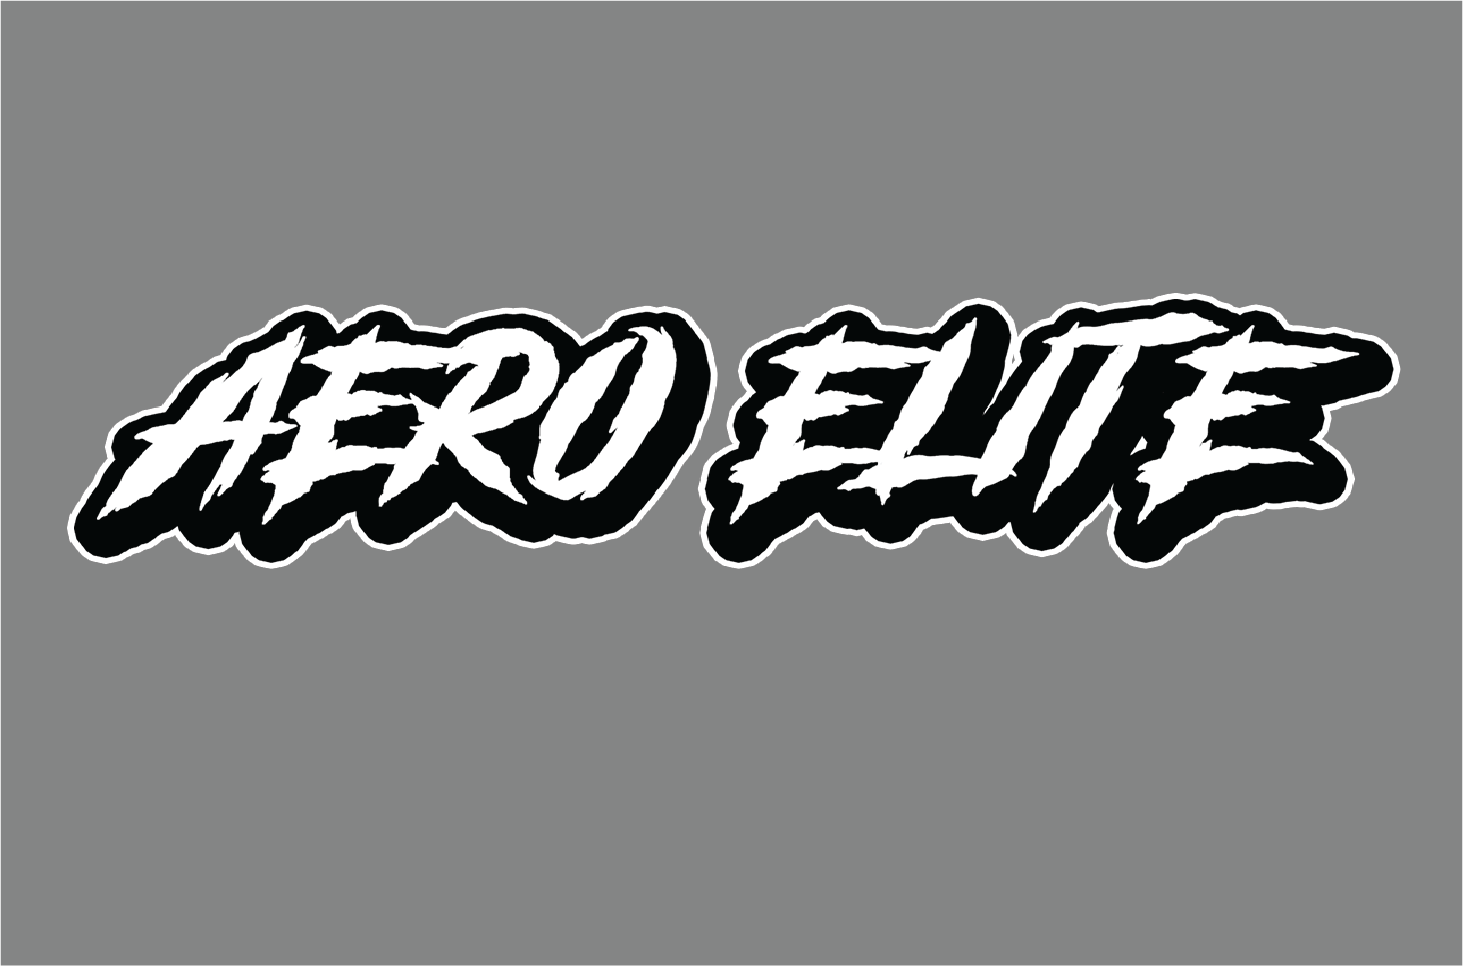 Aero Elite logo